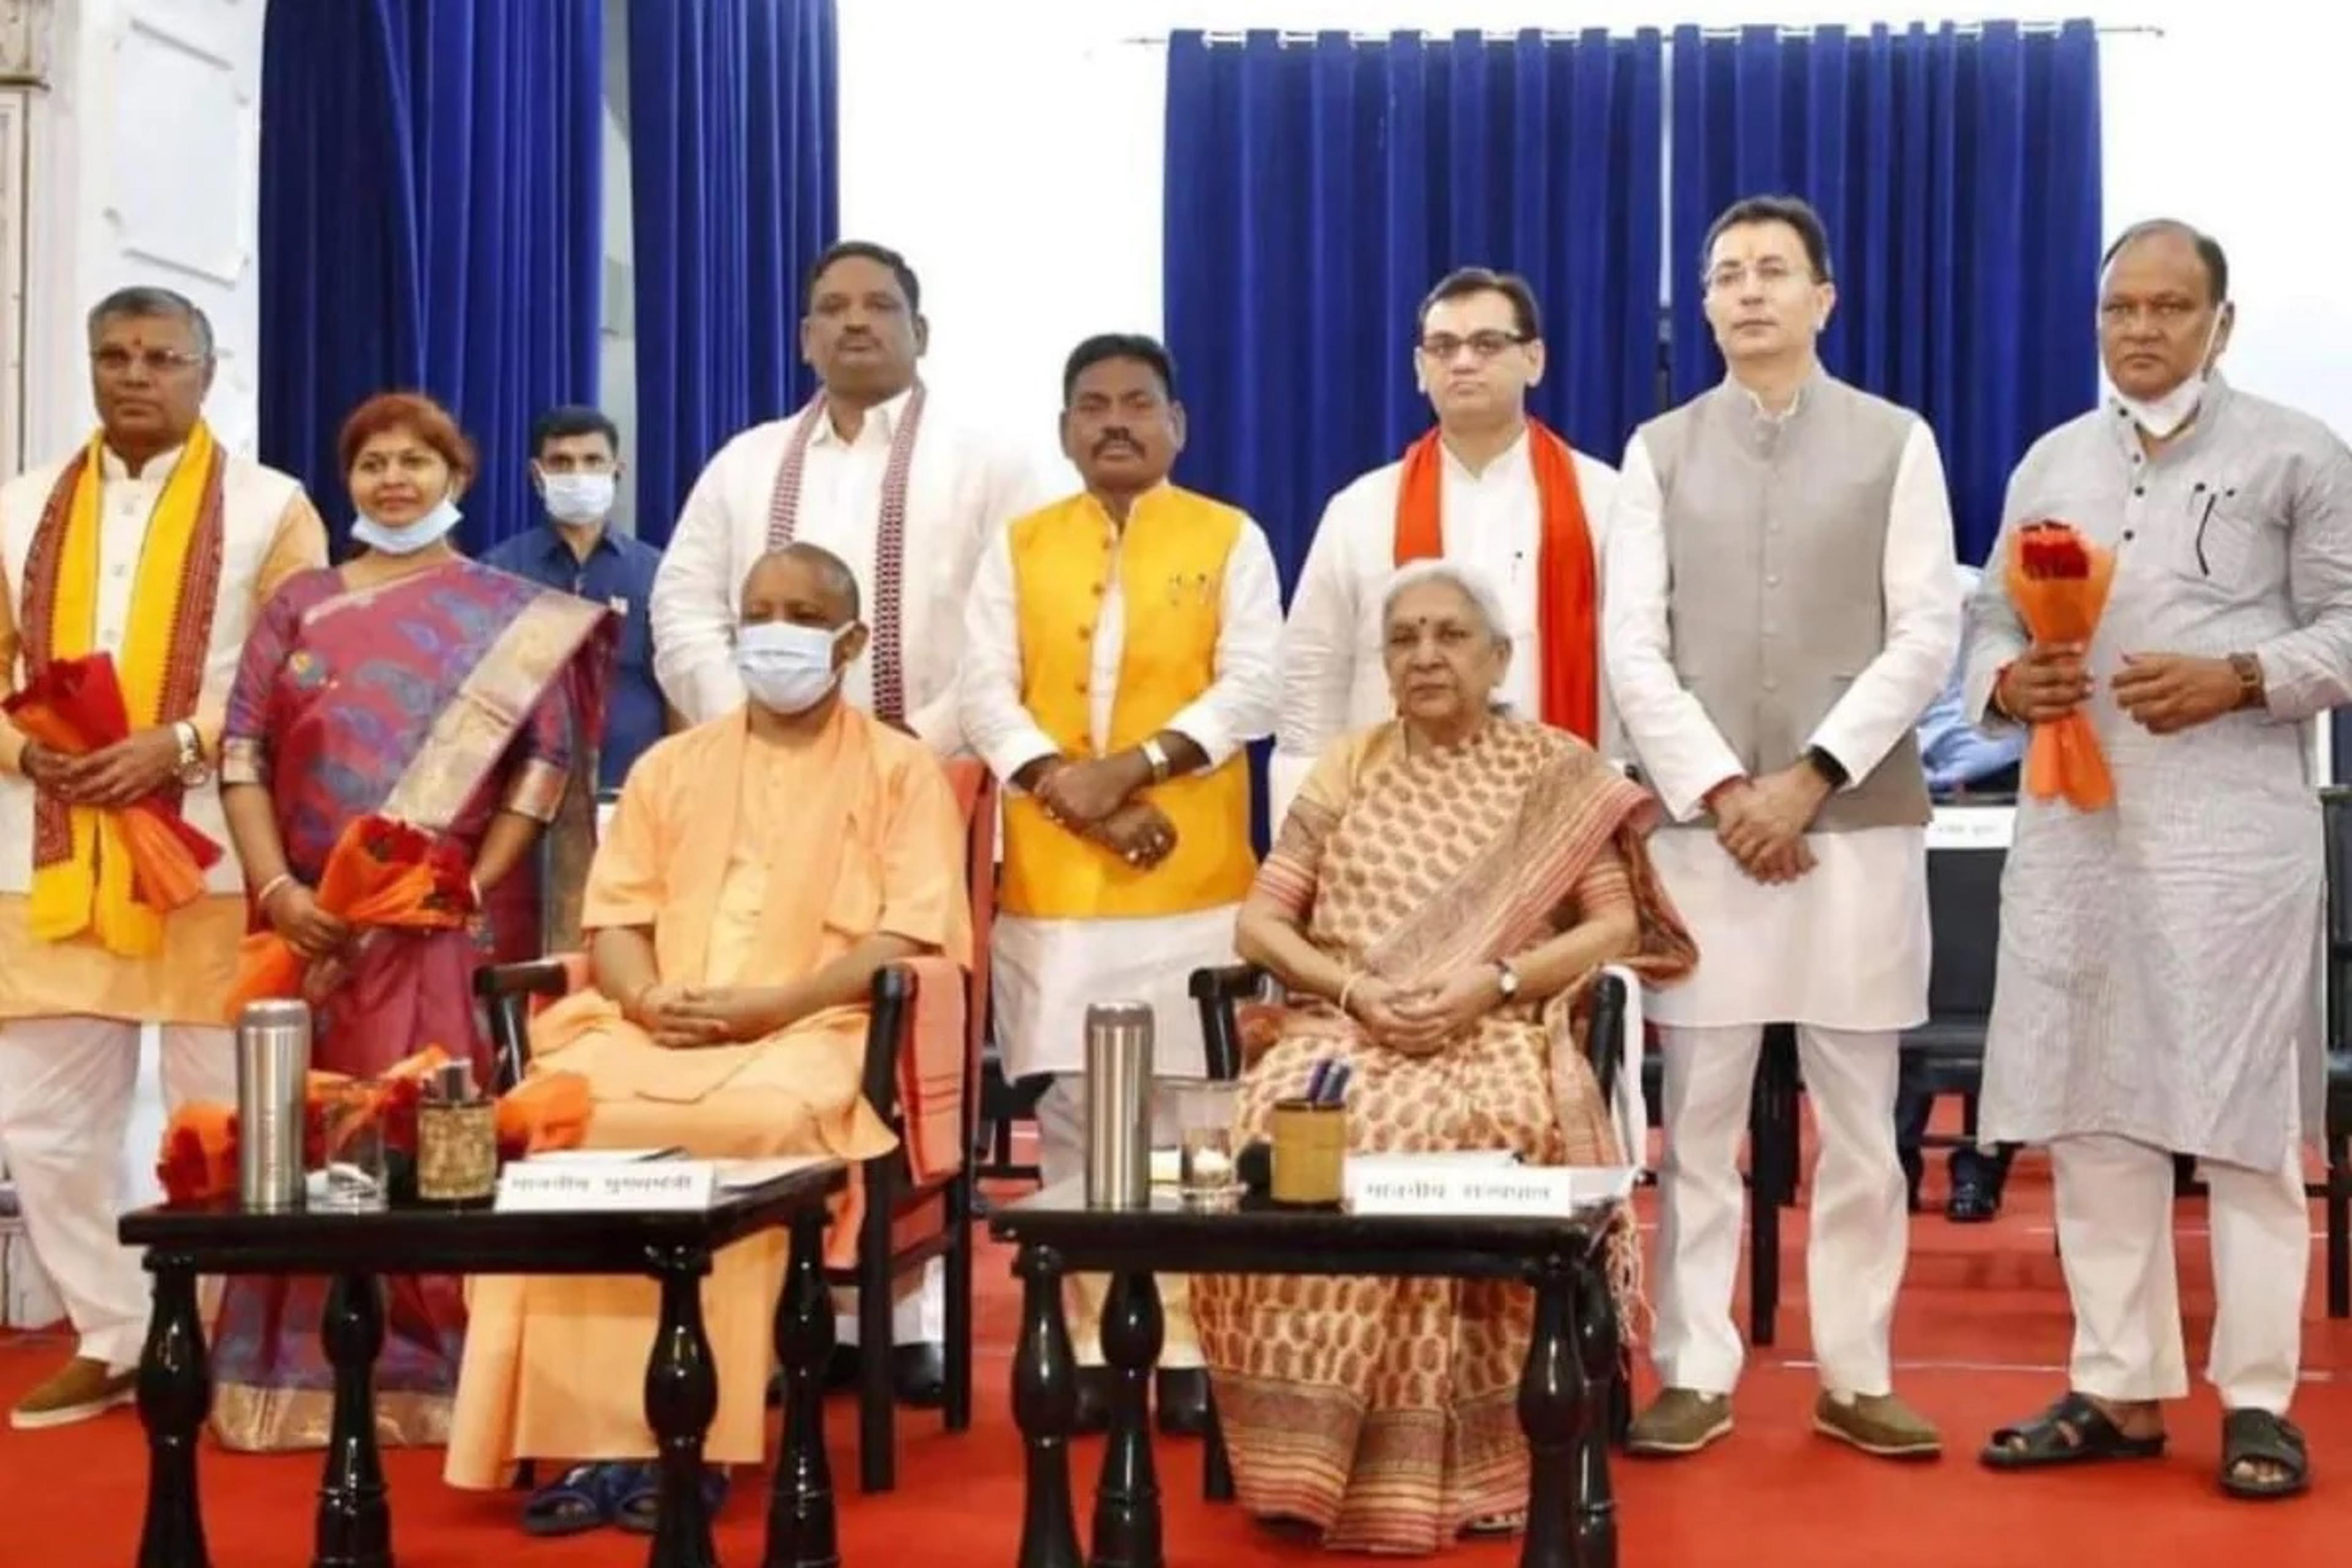 बीजेपी में इंपोर्टेड नेताओं की पूछ बढ़ी, 16 कैबिनेट मंत्रियों में से आठ मंत्री बाहरी, 8 ब्राह्मण मंत्रियों में 4 दूसरी पार्टी से इंपोर्ट